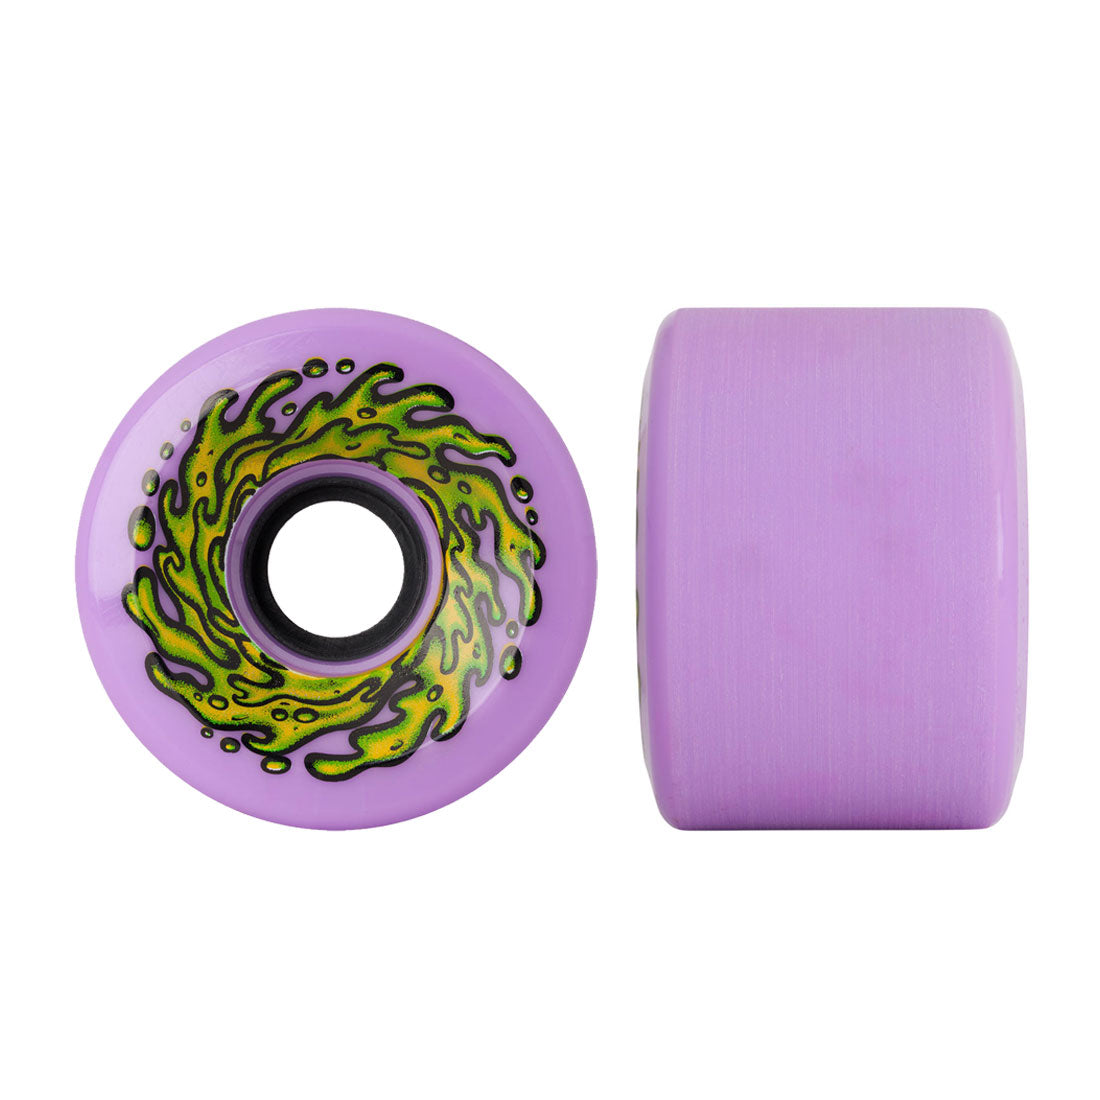 Slime Balls OG Slime 66mm 78a - Purple Skateboard Wheels